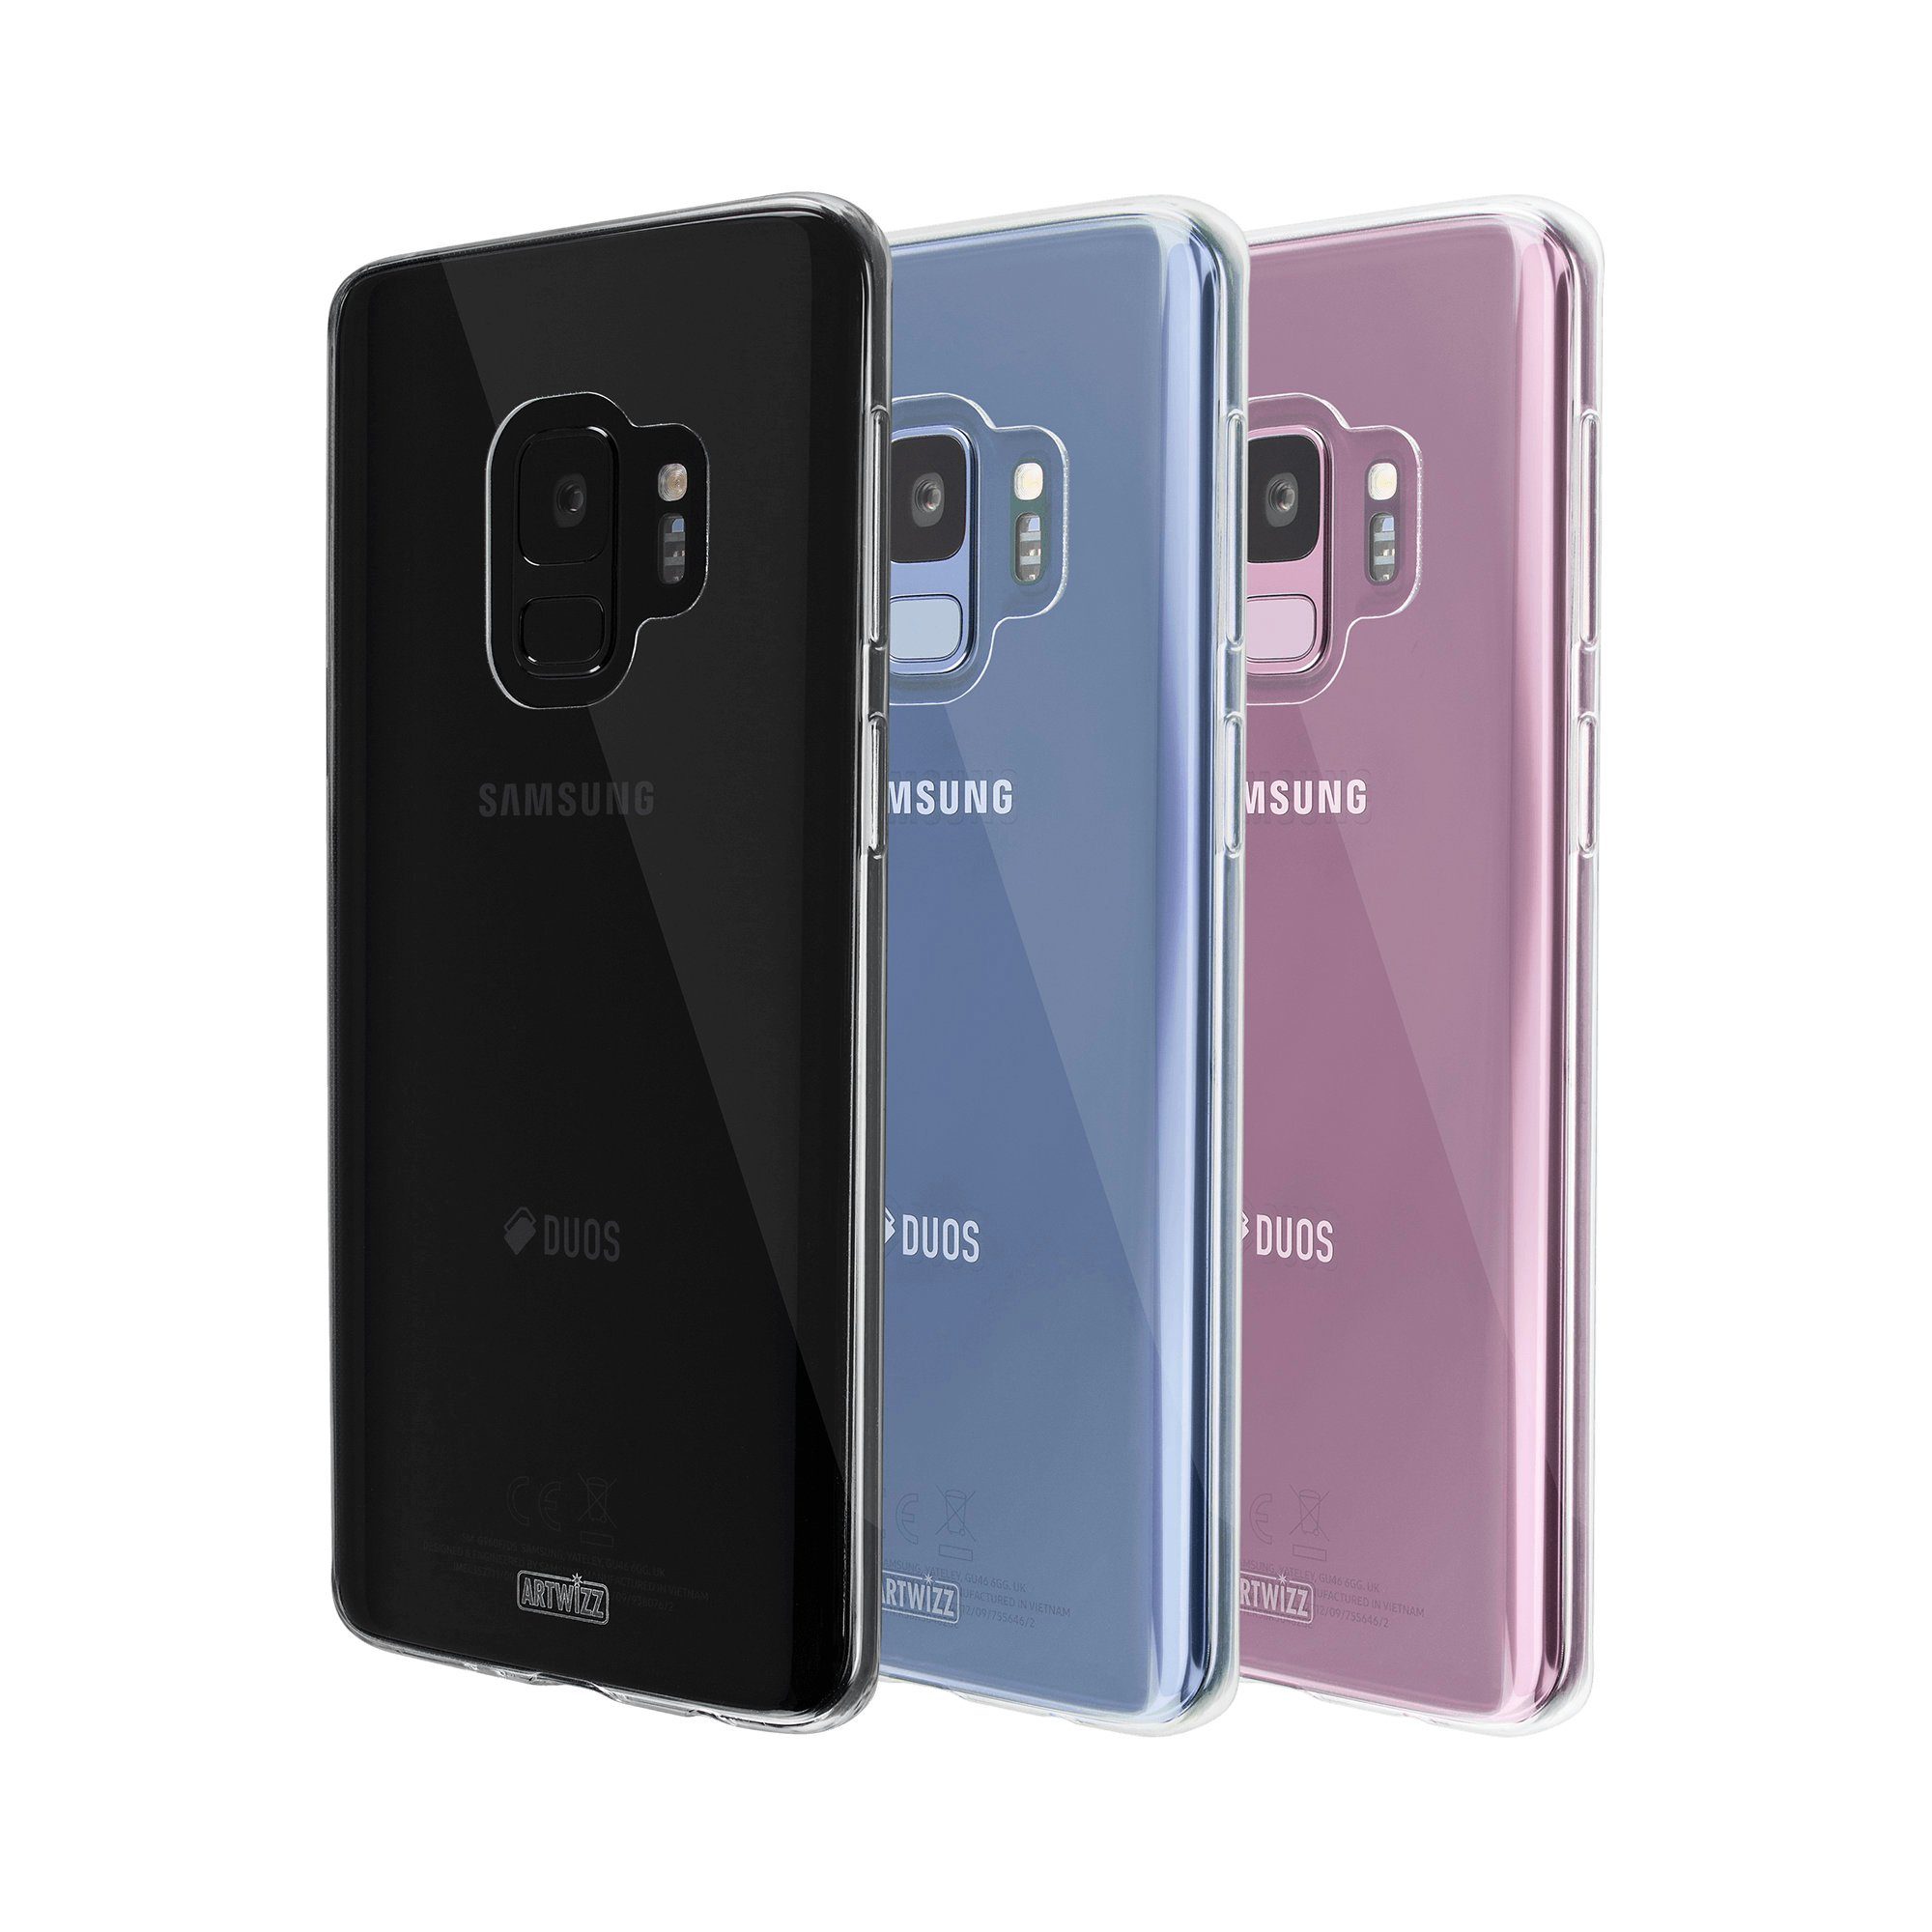 Artwizz Smartphone-Hülle Artwizz NoCase - Artwizz NoCase - Ultra dünne, elastische Schutzhülle aus TPU für Galaxy S9, Transparent